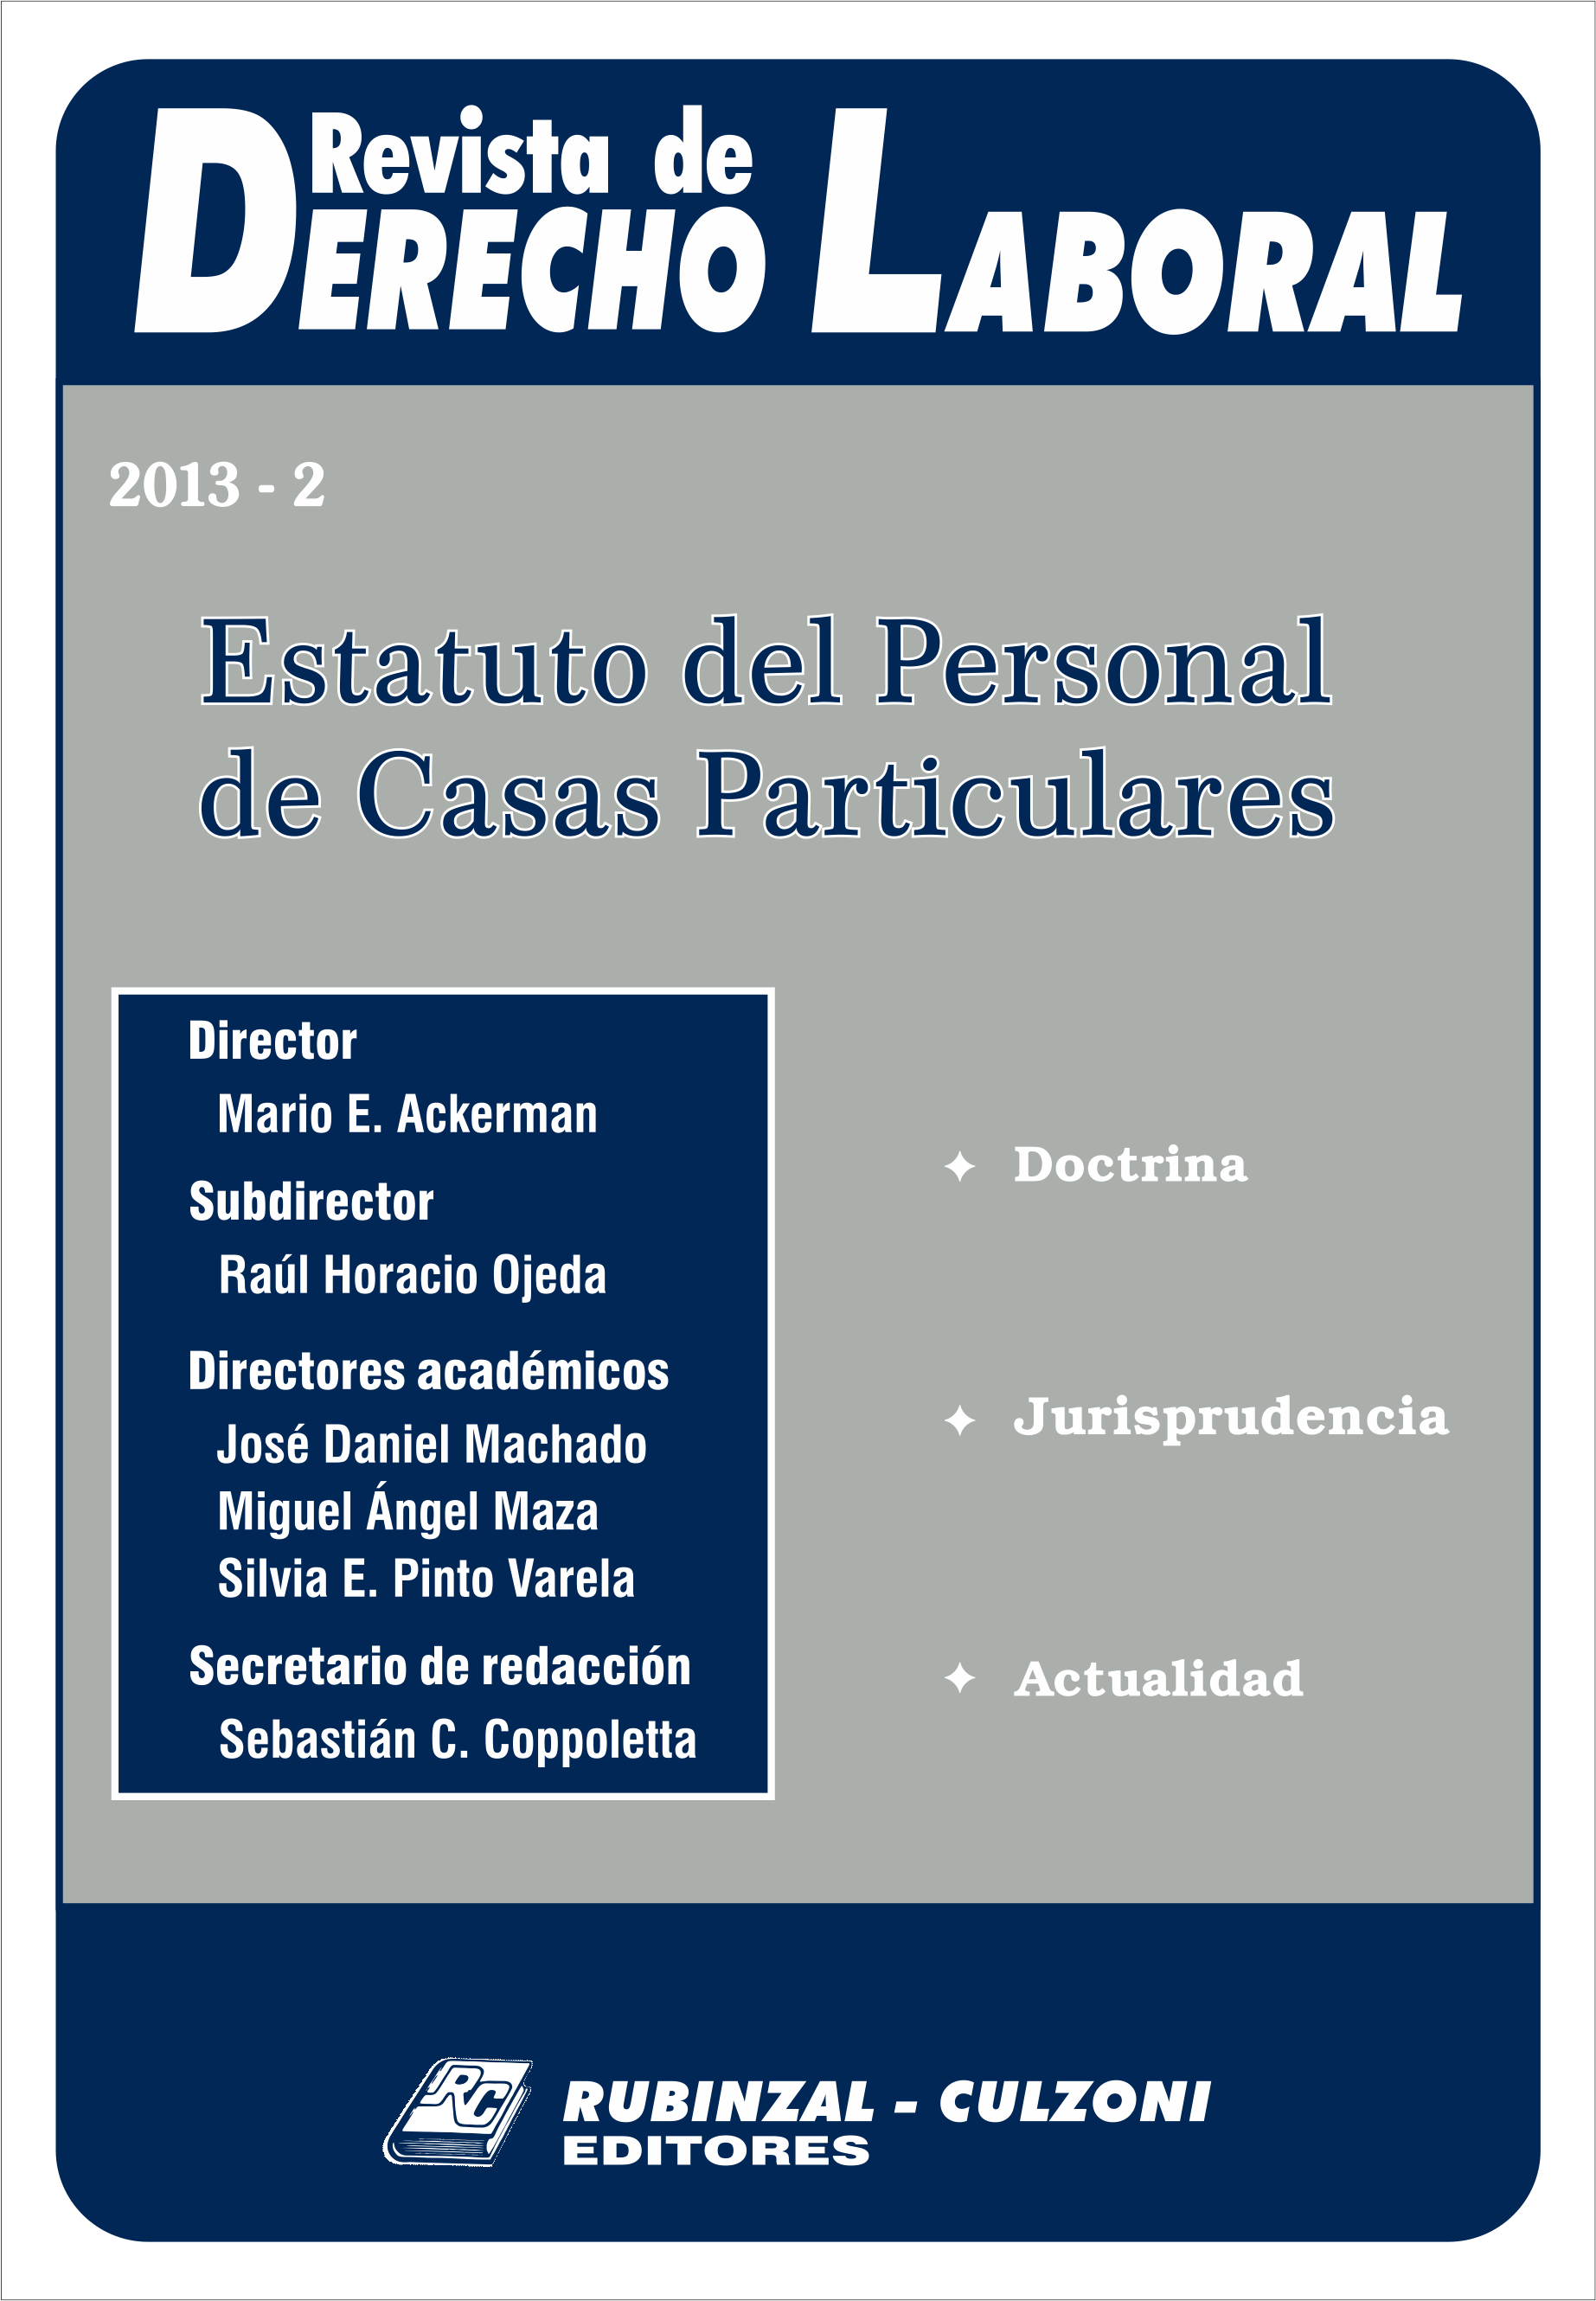 Revista de Derecho Laboral - Estatuto del Personal de Casas Particulares.